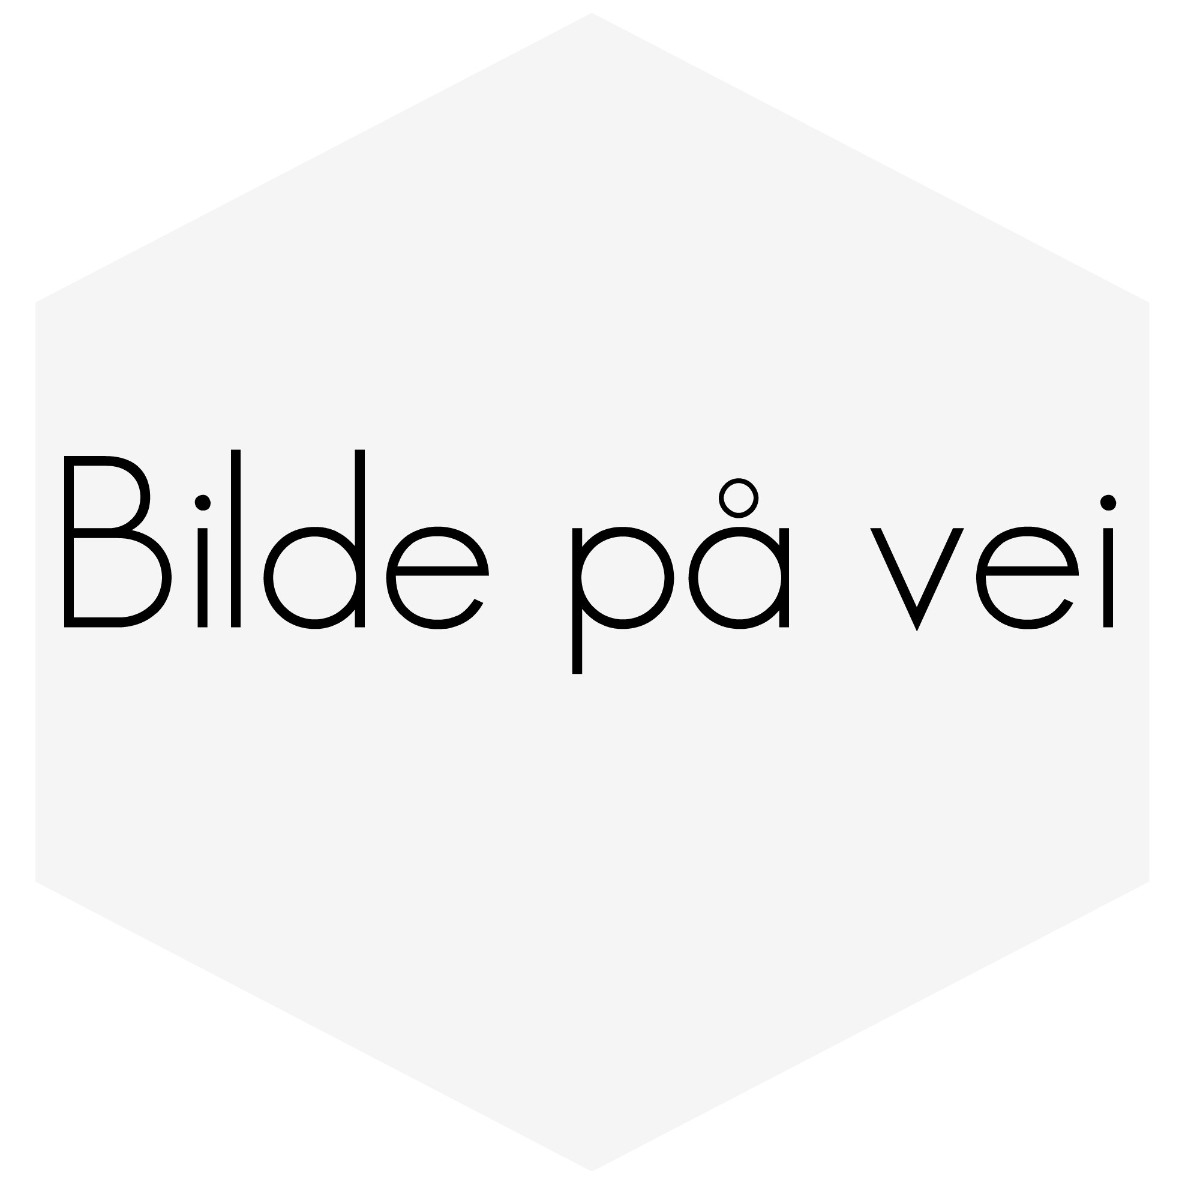 VINDAVVISER-SETT VOLVO 7/940 MED LANG TYPE PÅ BAKDØR. SOTET